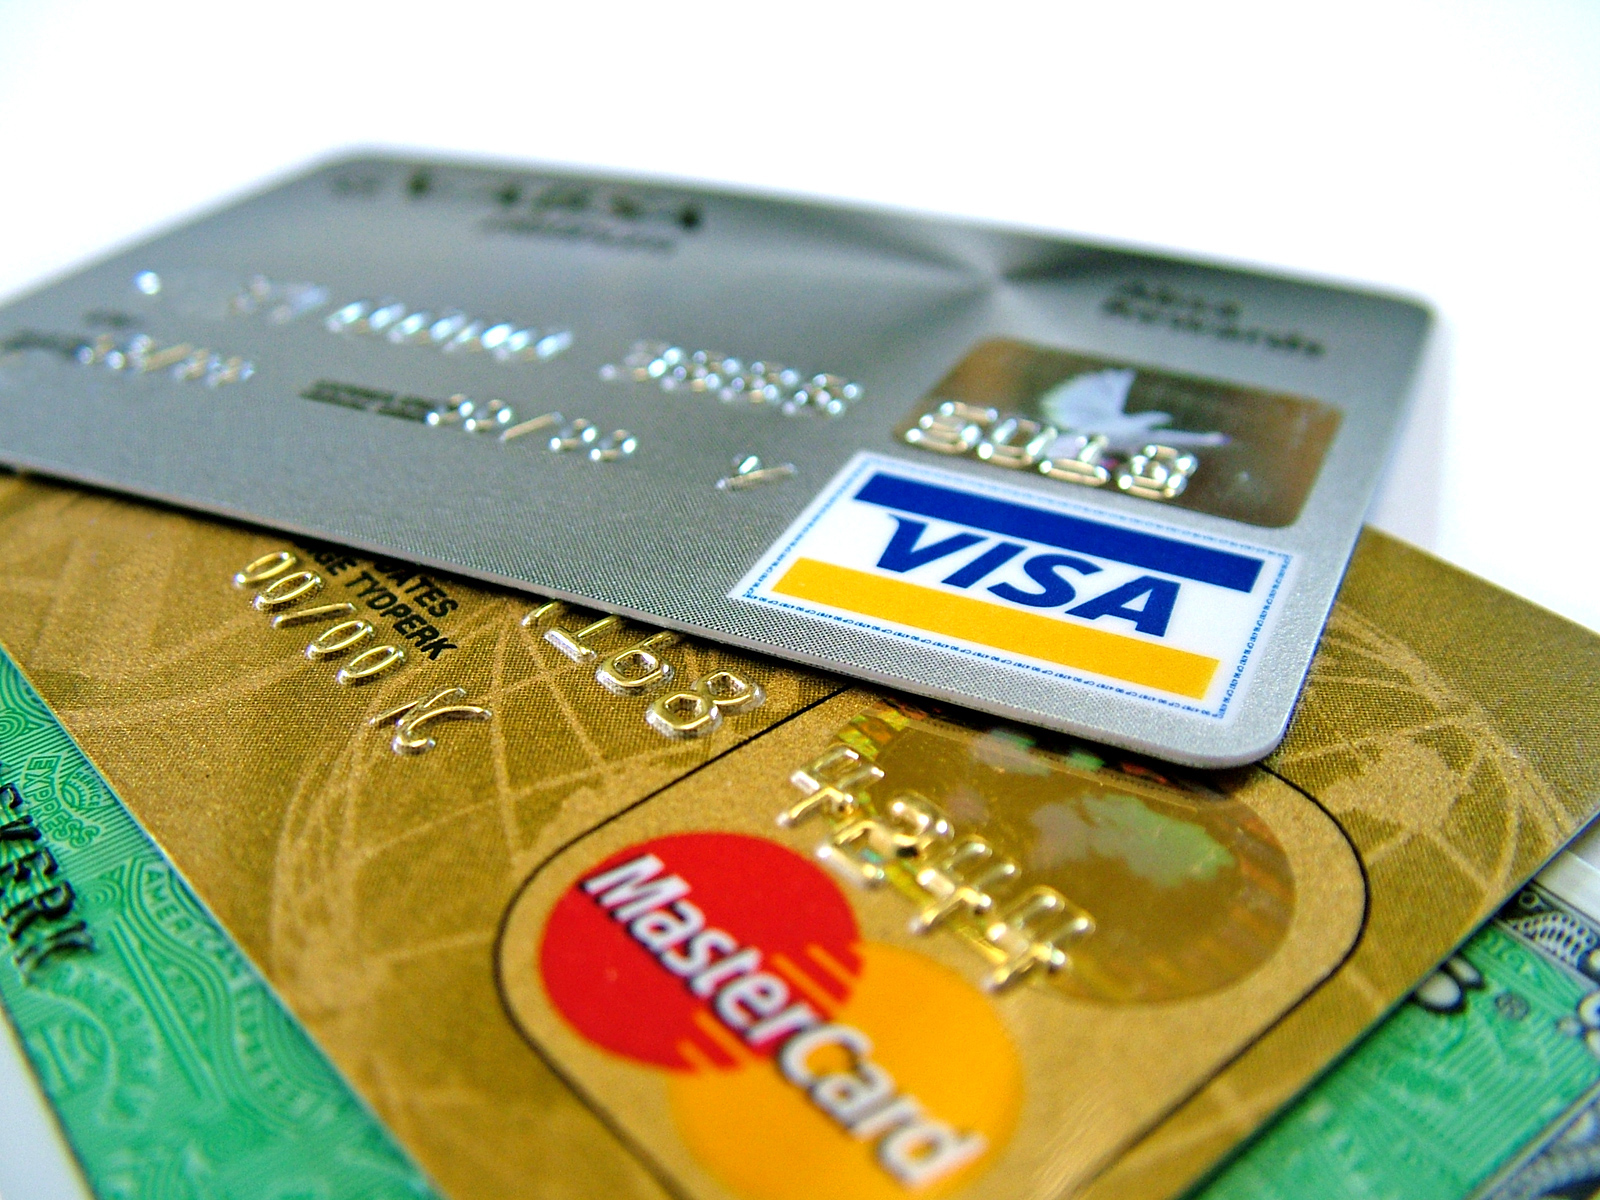 Banfanb emitió sus propias tarjetas de crédito por “bloqueo” de Mastercard